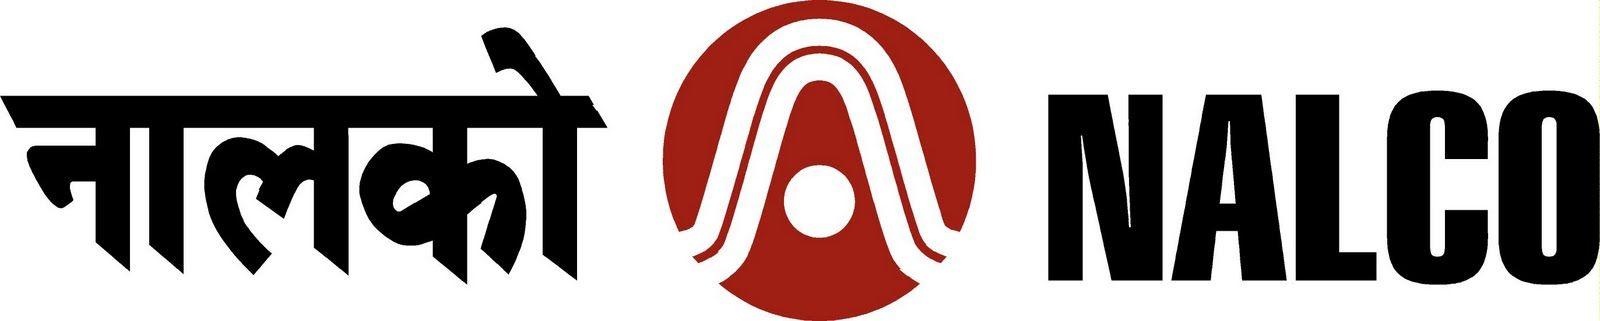 Nalco Logo - NALCO Logo Logo Vector. Free Indian Logos